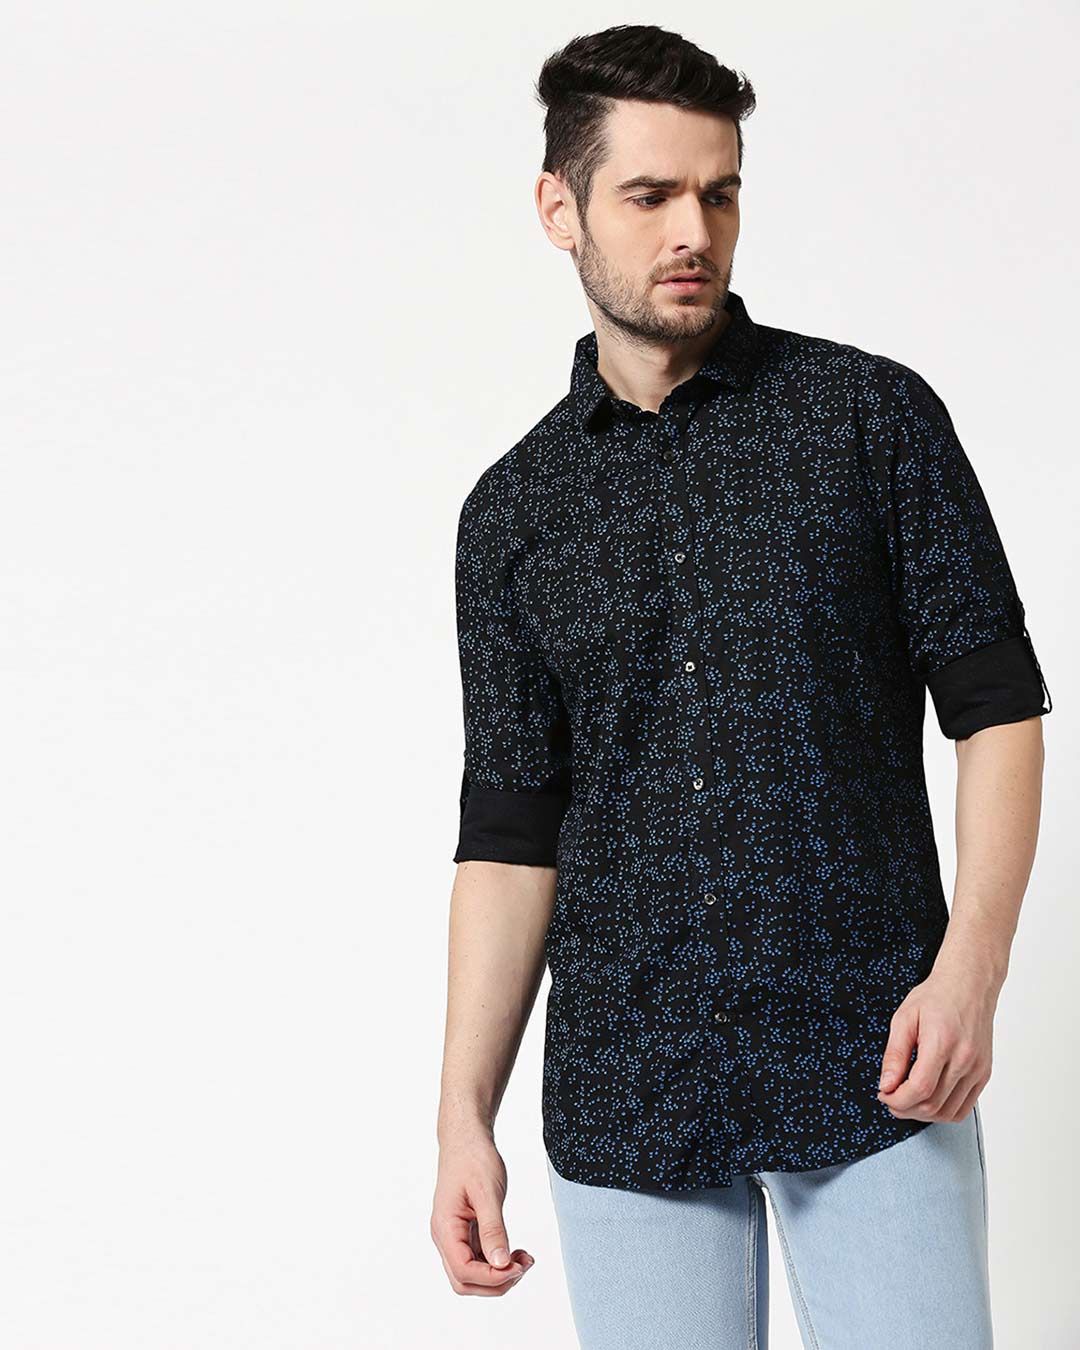 Buy Men's Black AOP Slim Fit Casual Shirt Online at Bewakoof